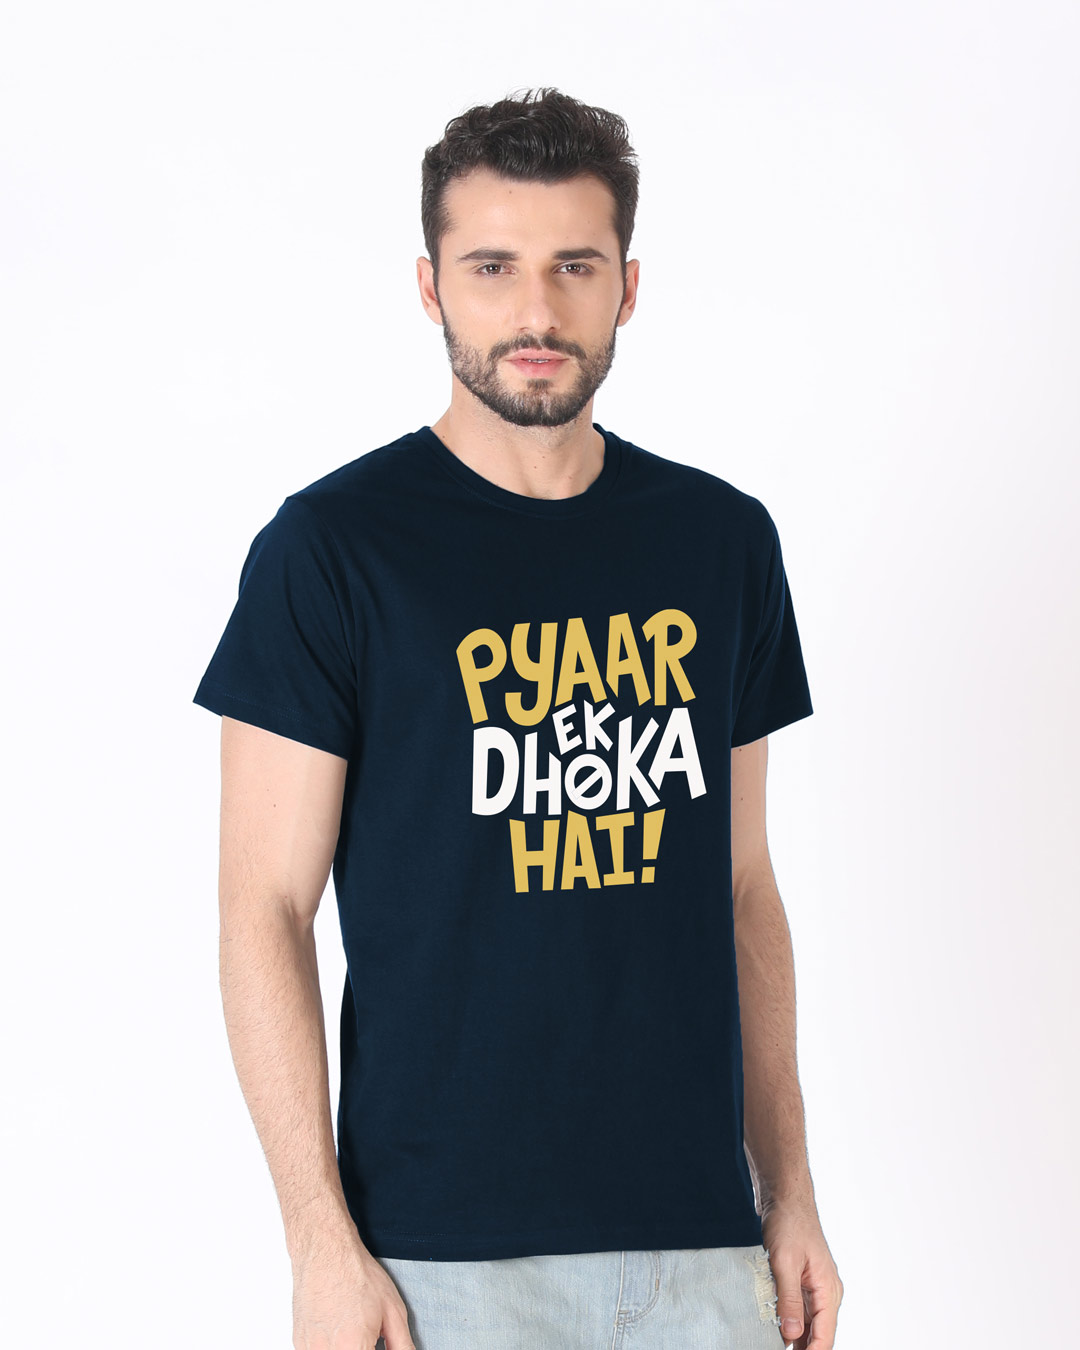 Wwe T Shirts India Online Agbu Hye Geen - john cena fan t shirt roblox